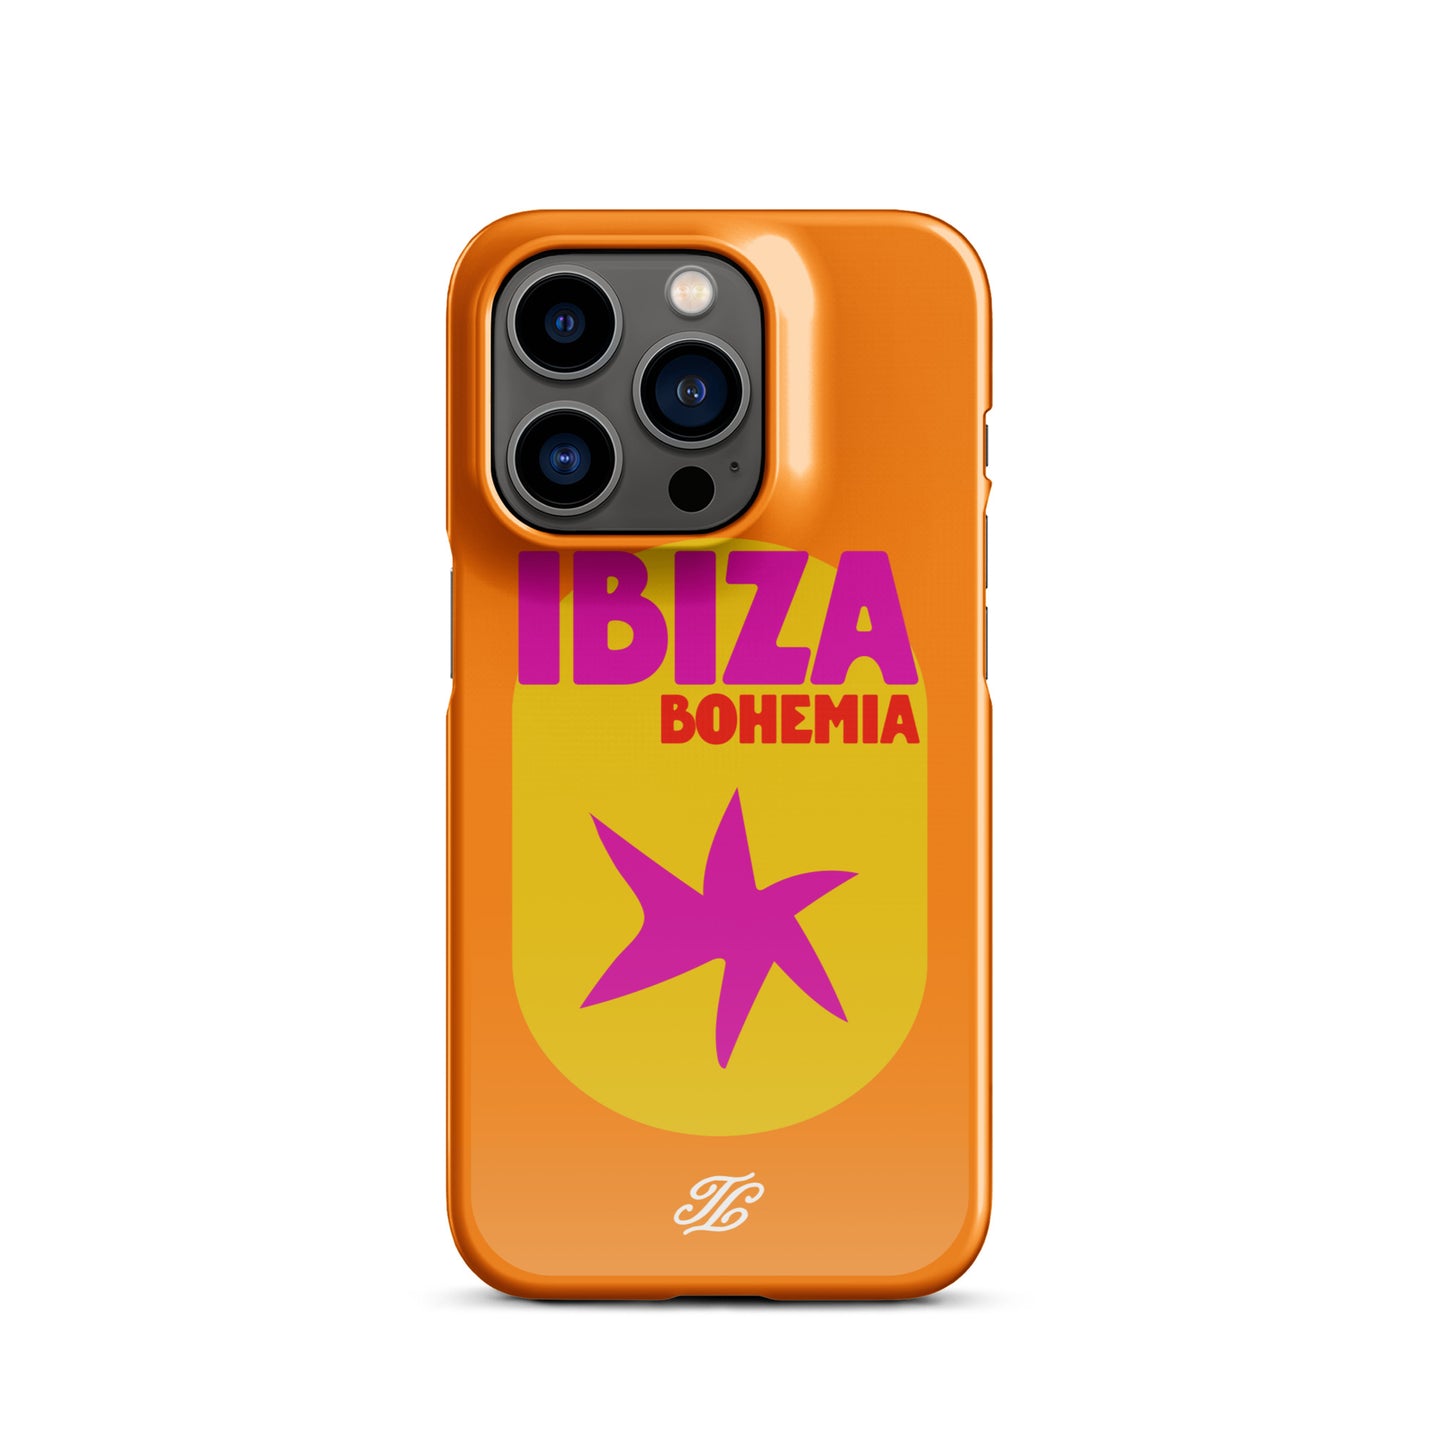 Ibiza iPhone® case